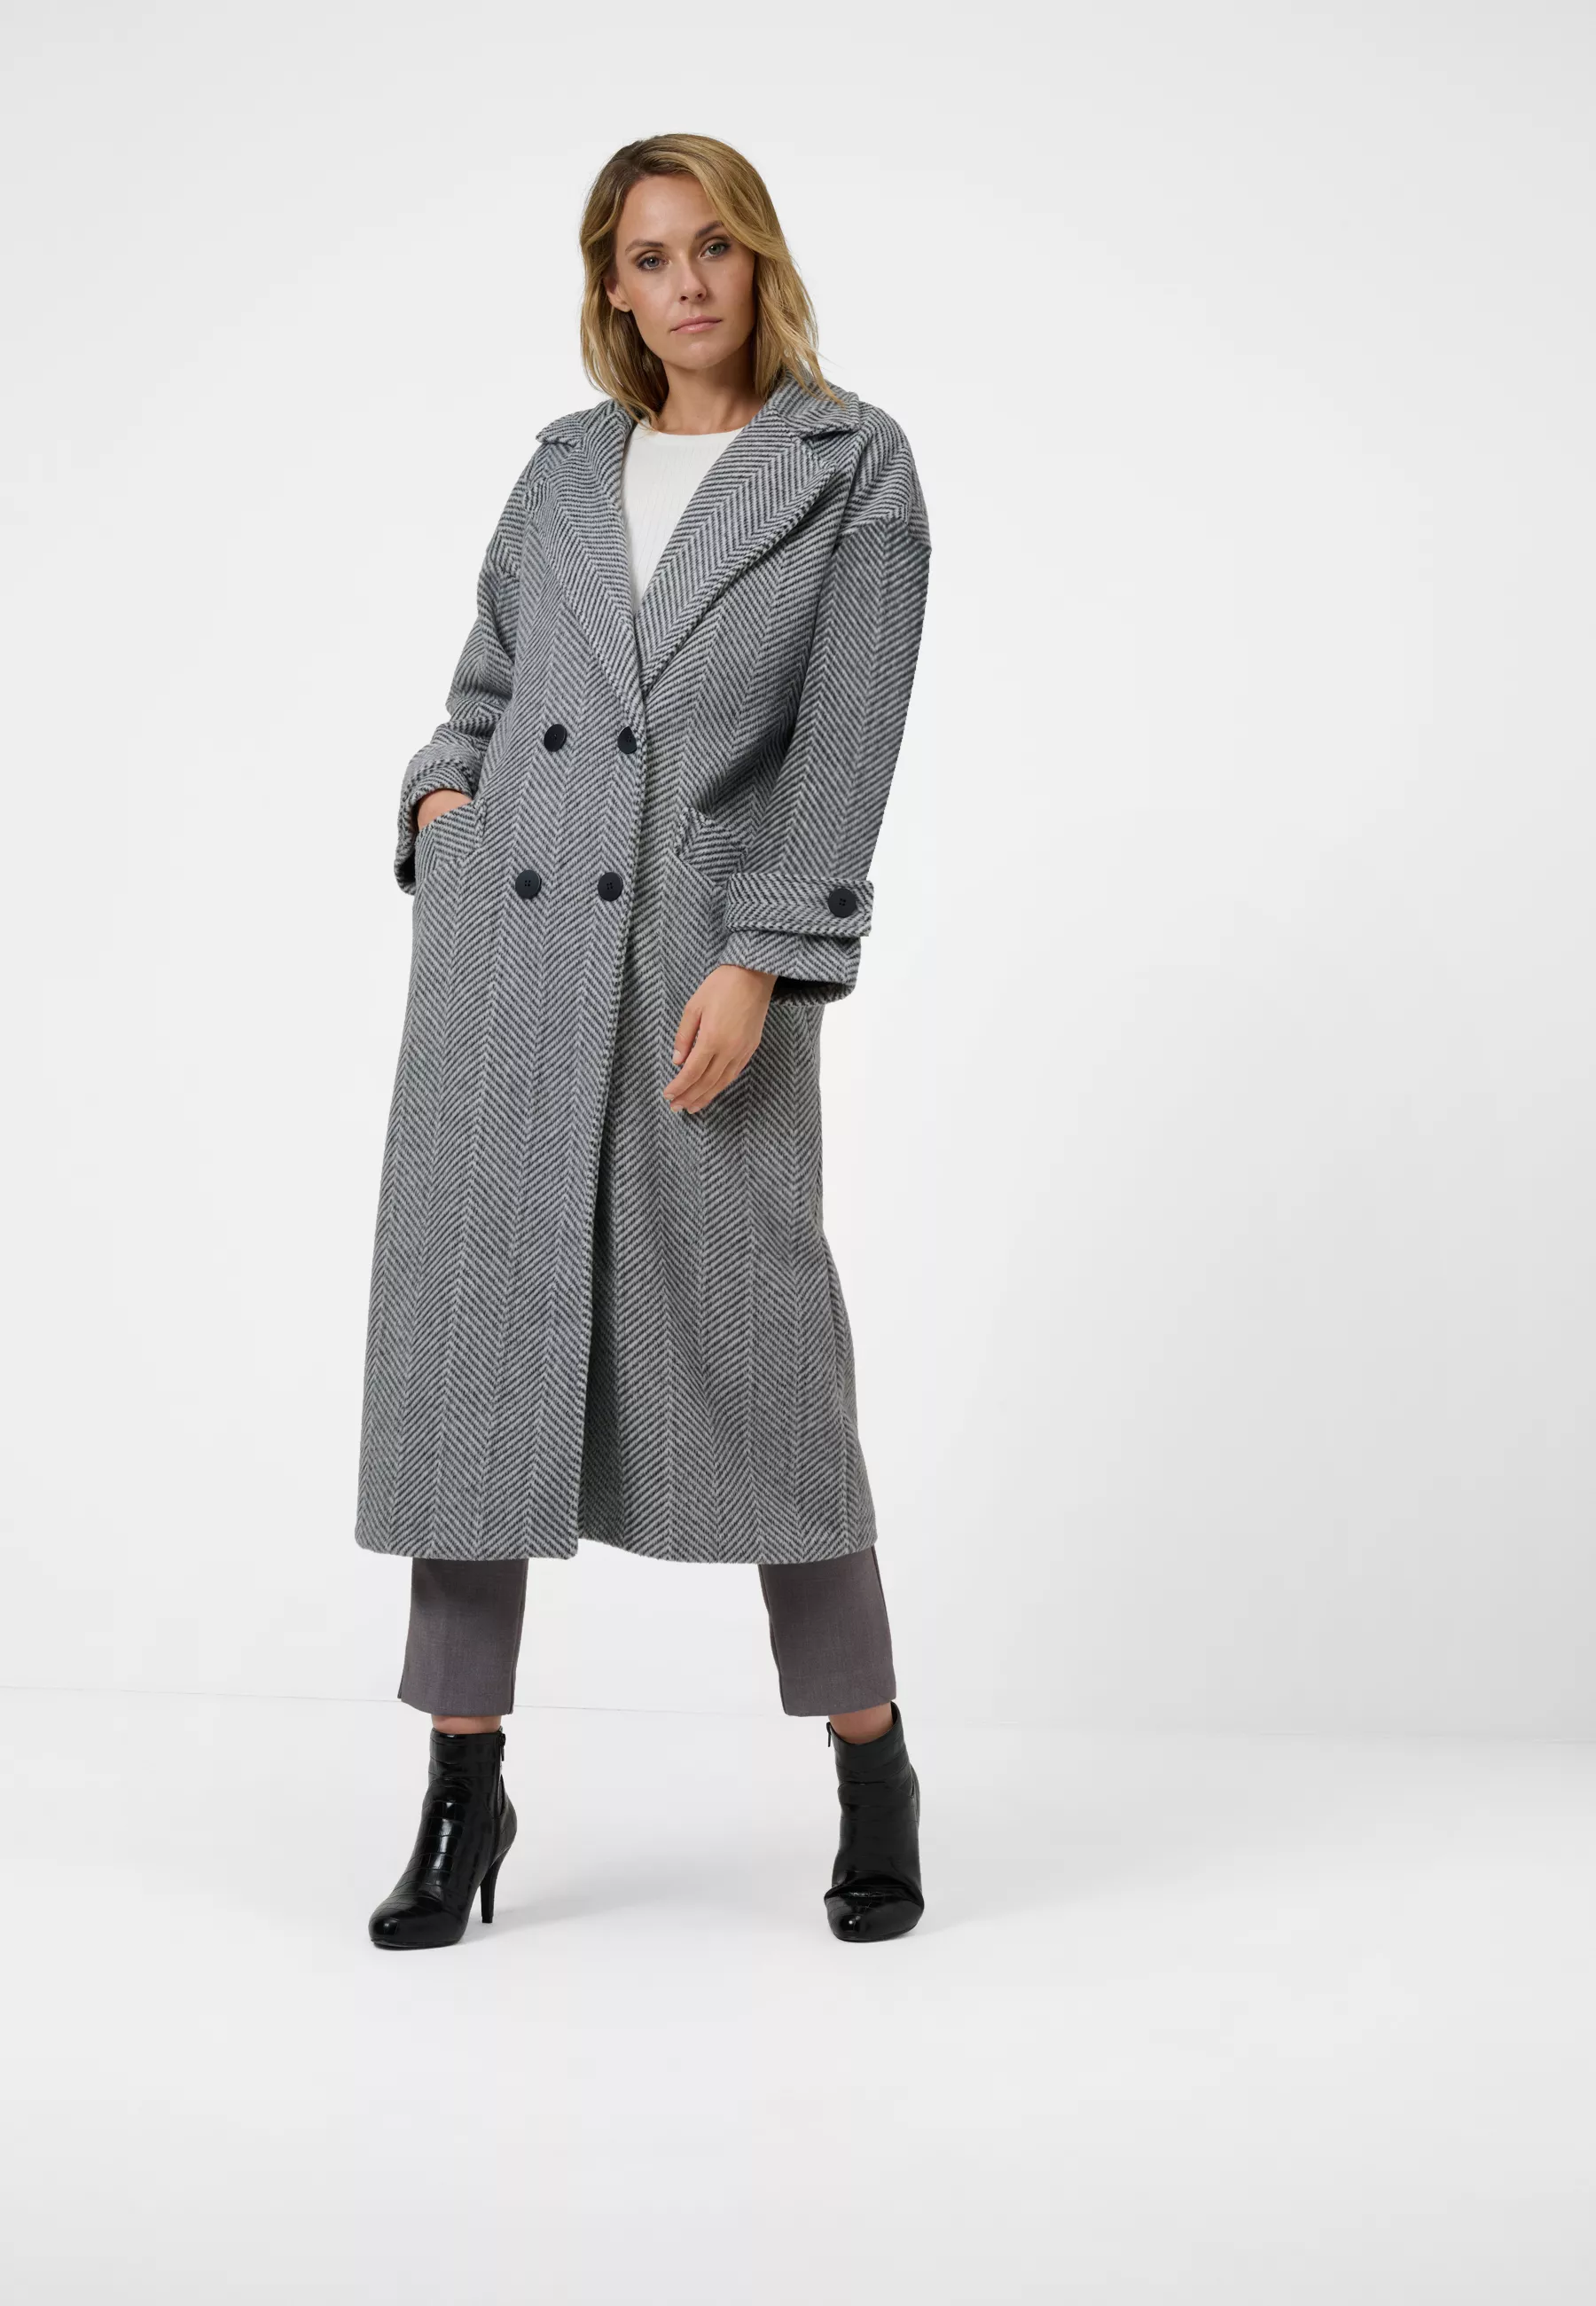 Damen Textil Mantel Franca in Grau gestreift von Ricano, Vollansicht am Model